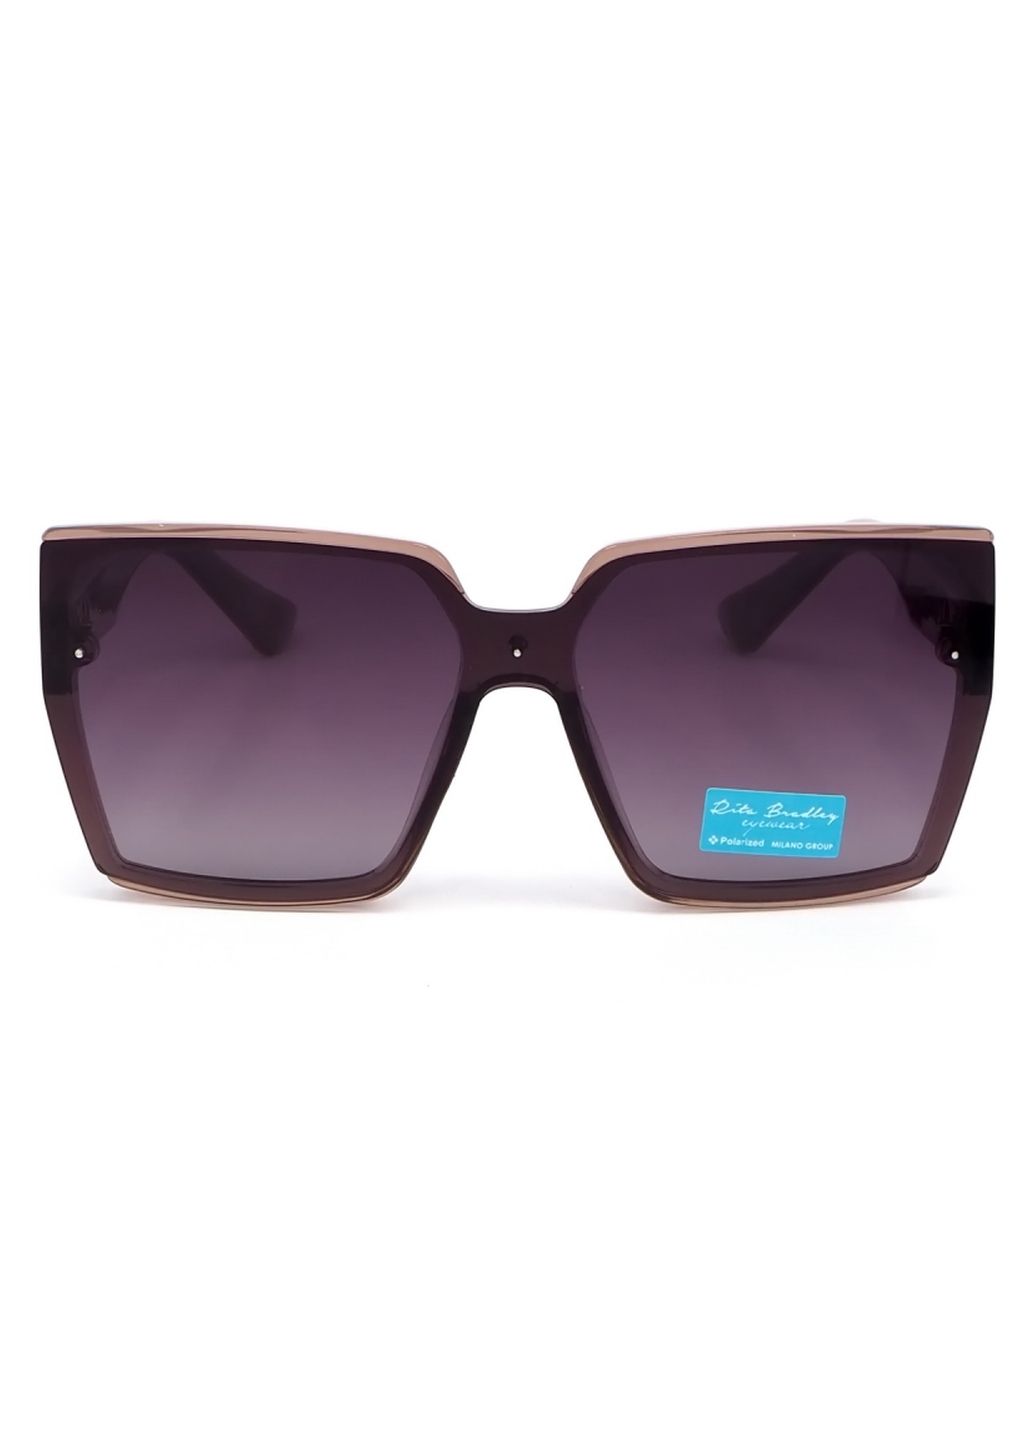 Купить Женские солнцезащитные очки Rita Bradley с поляризацией RB733 112090 в интернет-магазине